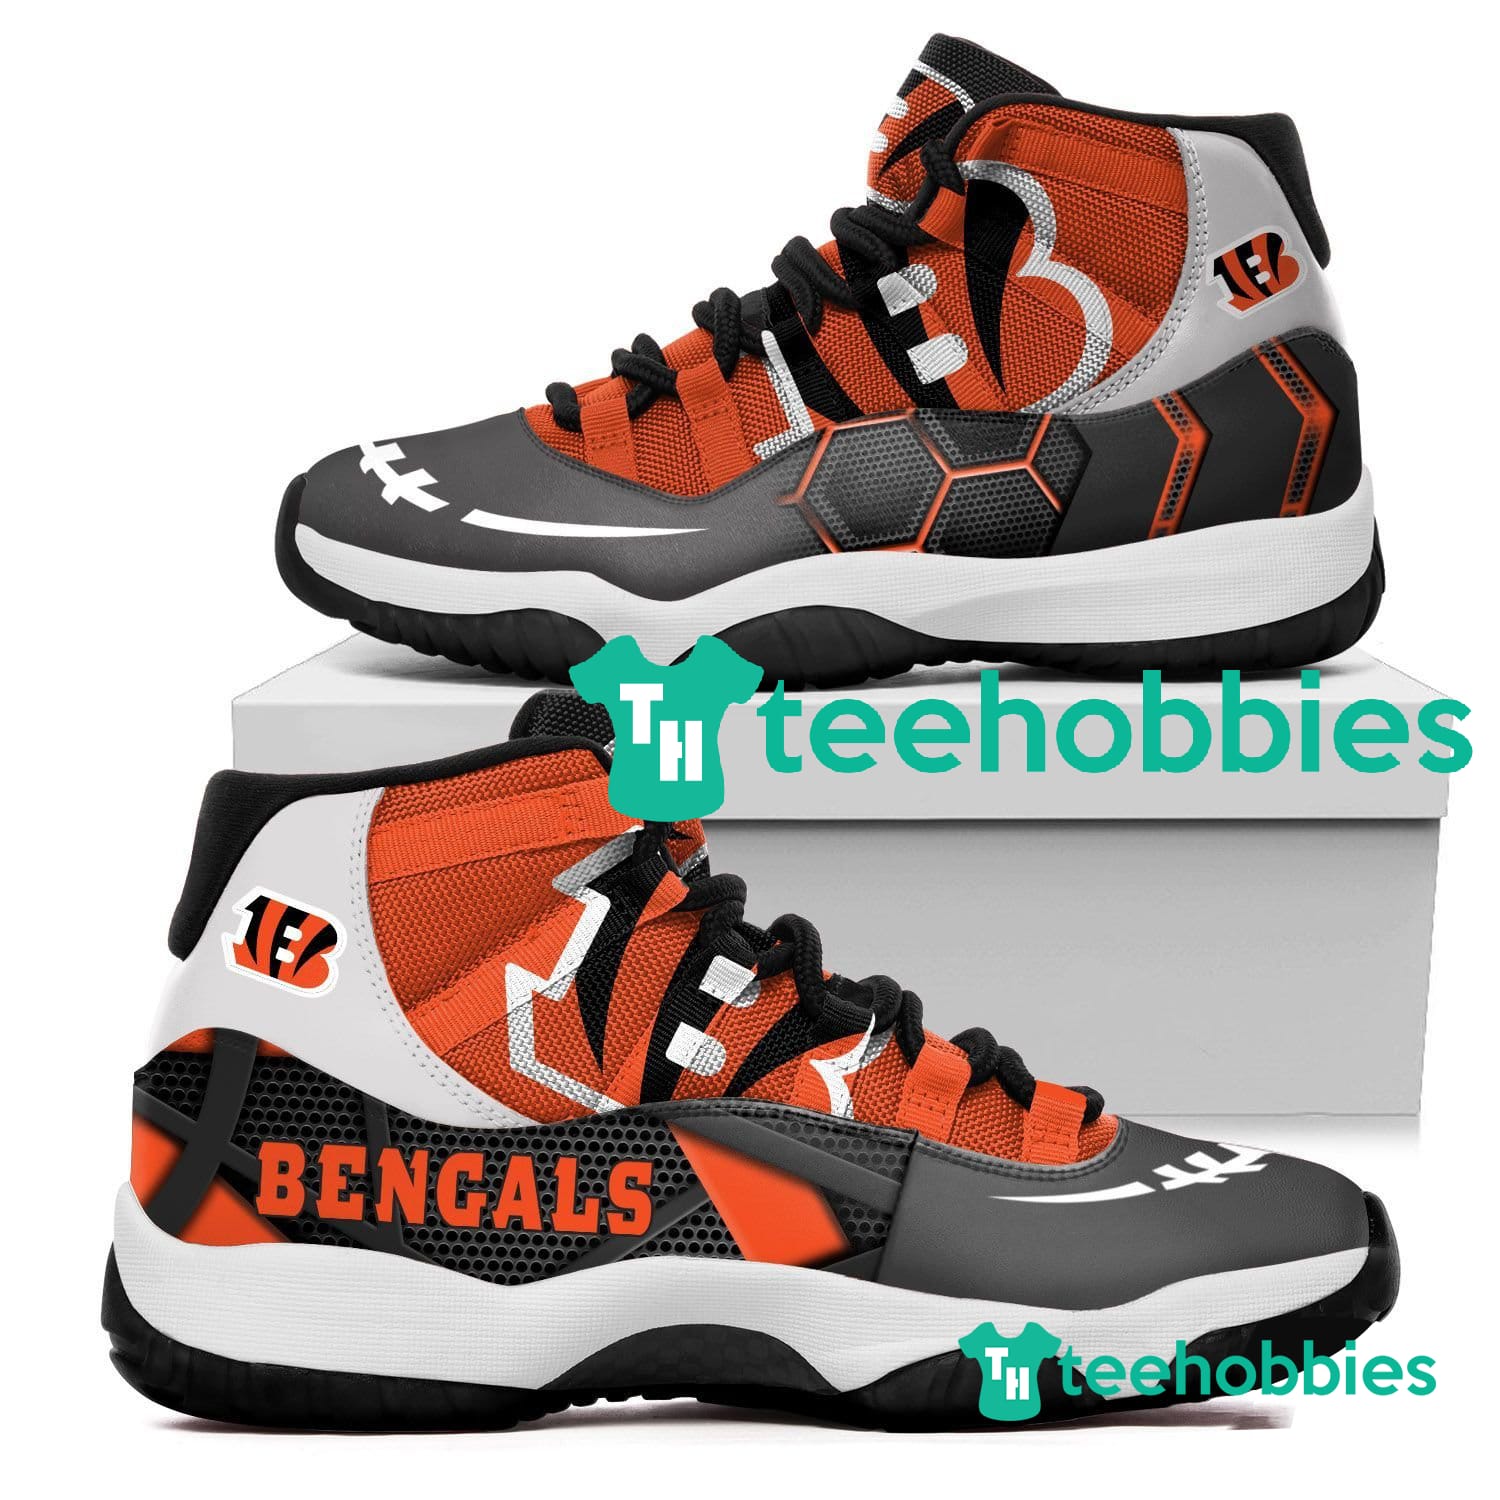 Cincinnati Bengals New Air Jordan 11 Sneakers Shoes Concord Bred Retro Design Men Women